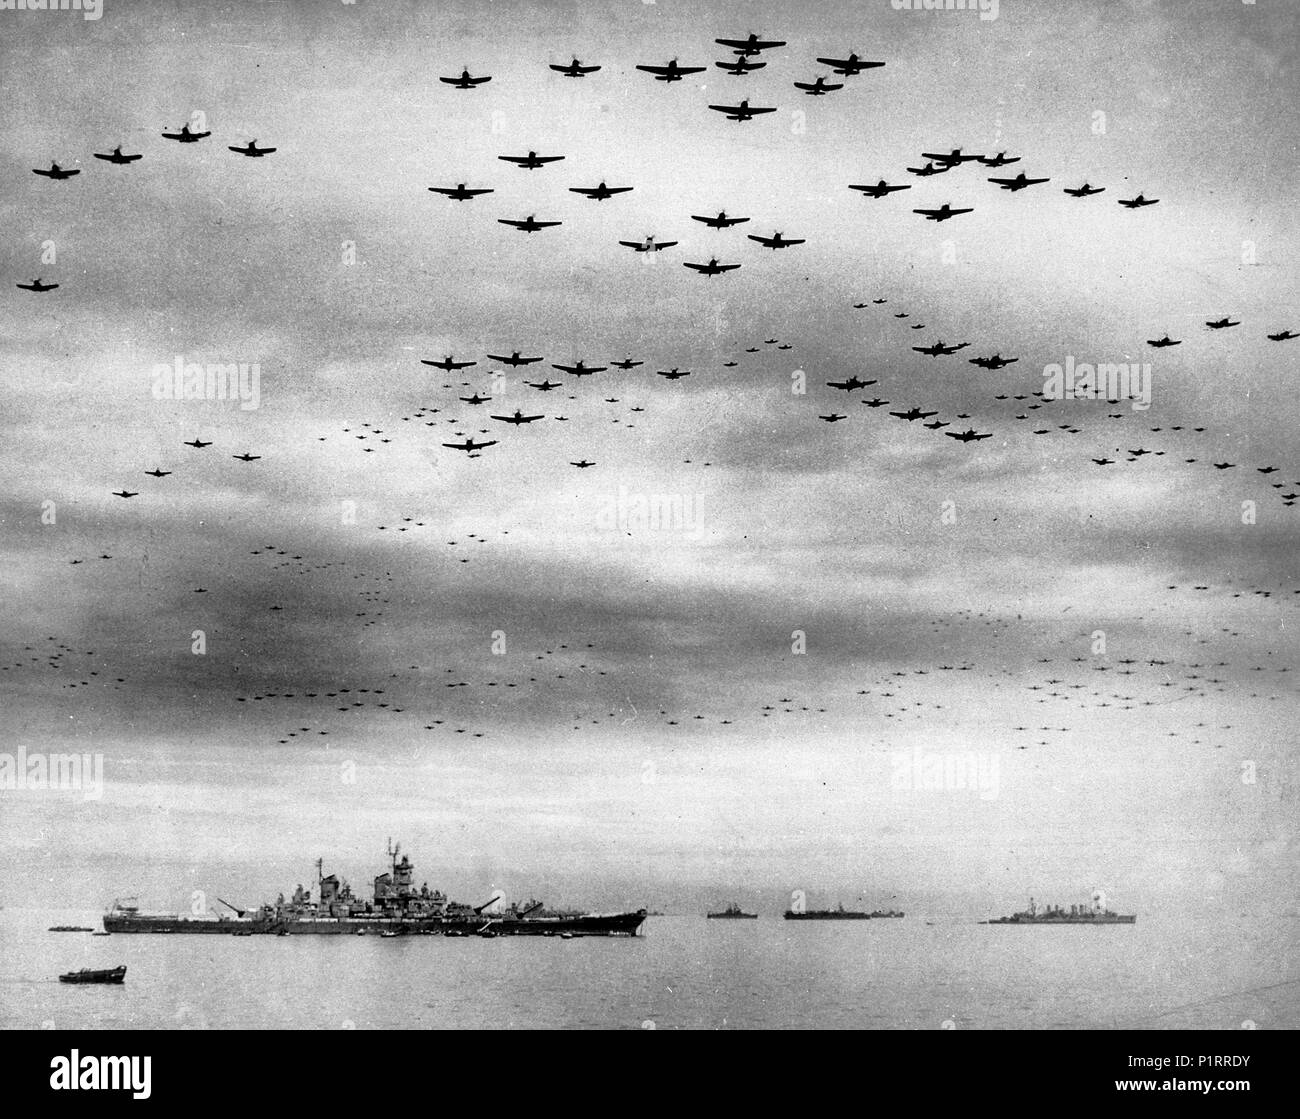 La rendición del Japón, el 2 de septiembre de 1945: U.S. Navy carrier aviones vuelan en formación sobre las flotas estadounidenses y británicas en la Bahía de Tokio durante las ceremonias de entrega. El acorazado USS Missouri (BB-63), donde tuvieron lugar las ceremonias, a la izquierda. La luz cruiser USS Detroit (CL-8) está a la distancia correcta. Incluir aeronaves Grumman TBM Avenger, Grumman F6F Hellcat, Curtiss SB2C Helldiver y VOUGHT F4U Corsair tipos. Septiembre 2, 1945 Foto de stock